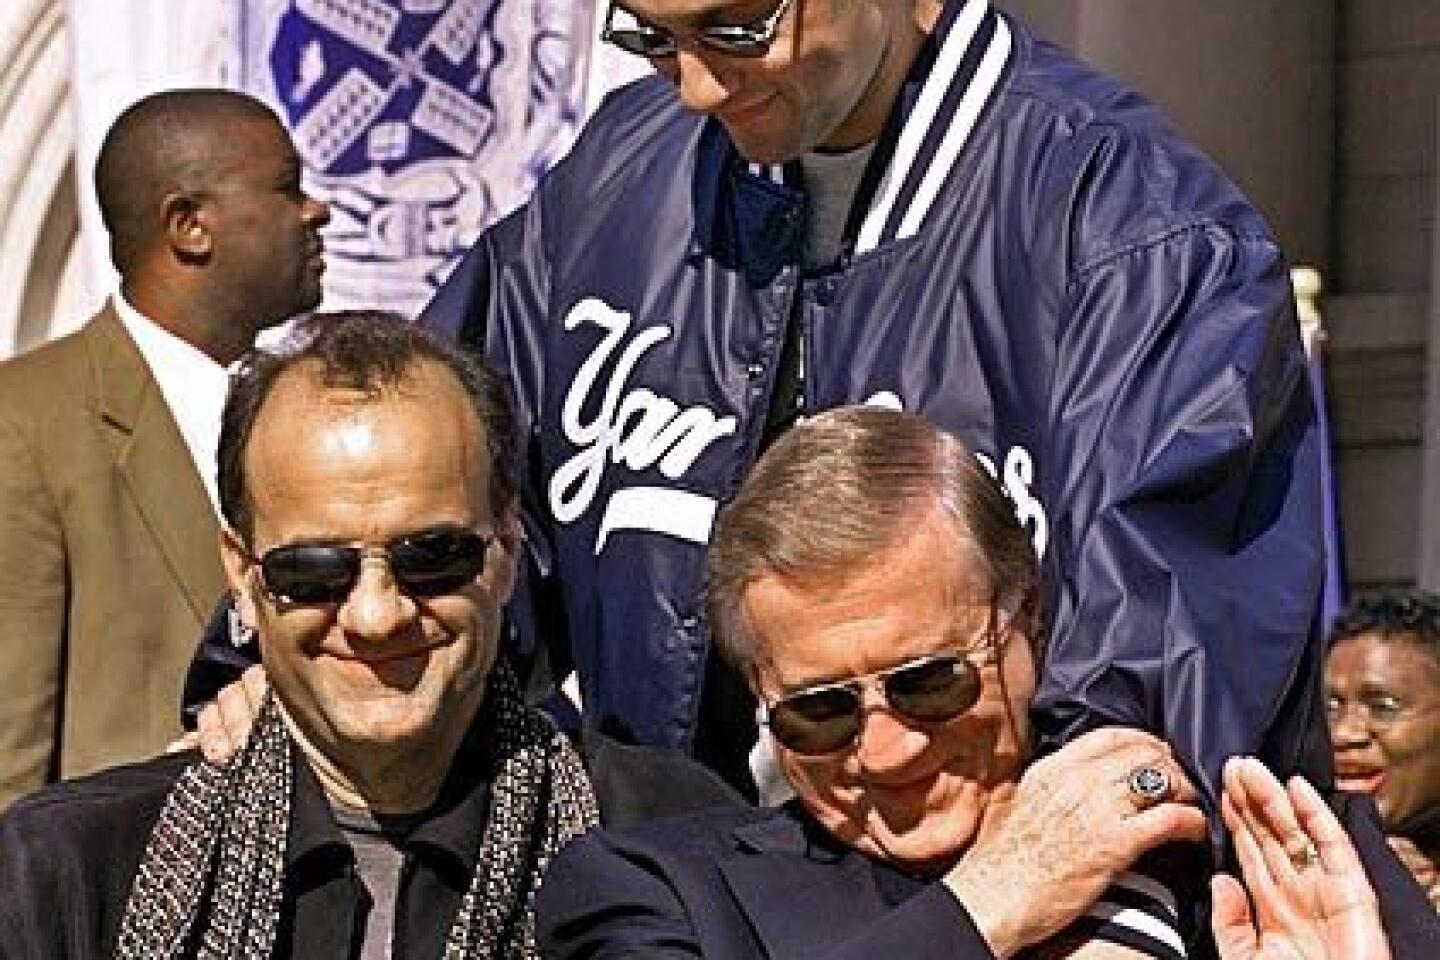 Yankees owner George Steinbrenner dies at 80